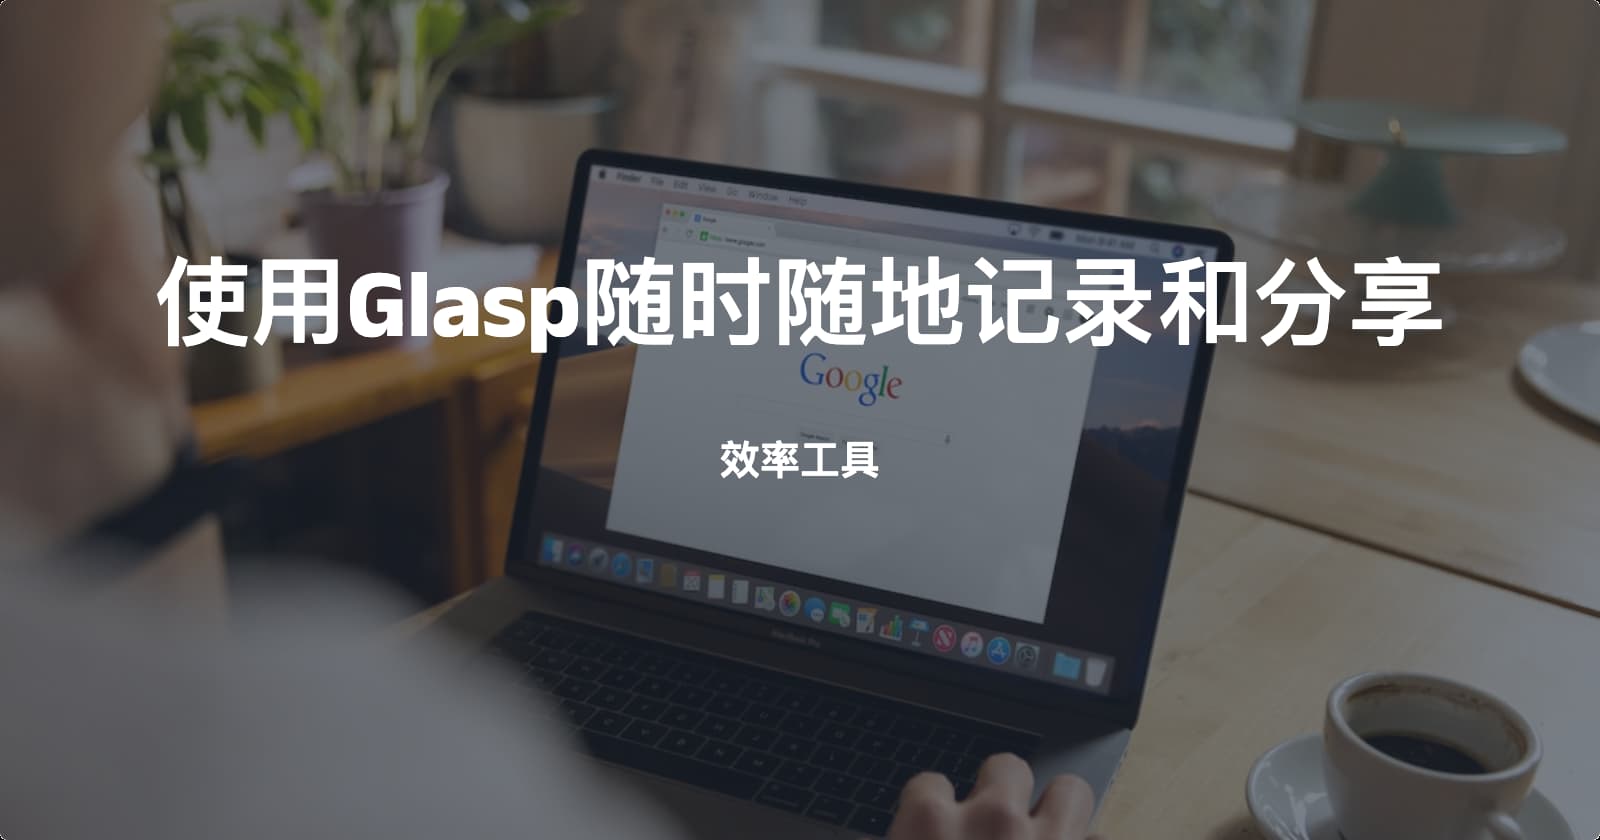 使用Glasp在浏览器中随时随地记录和分享